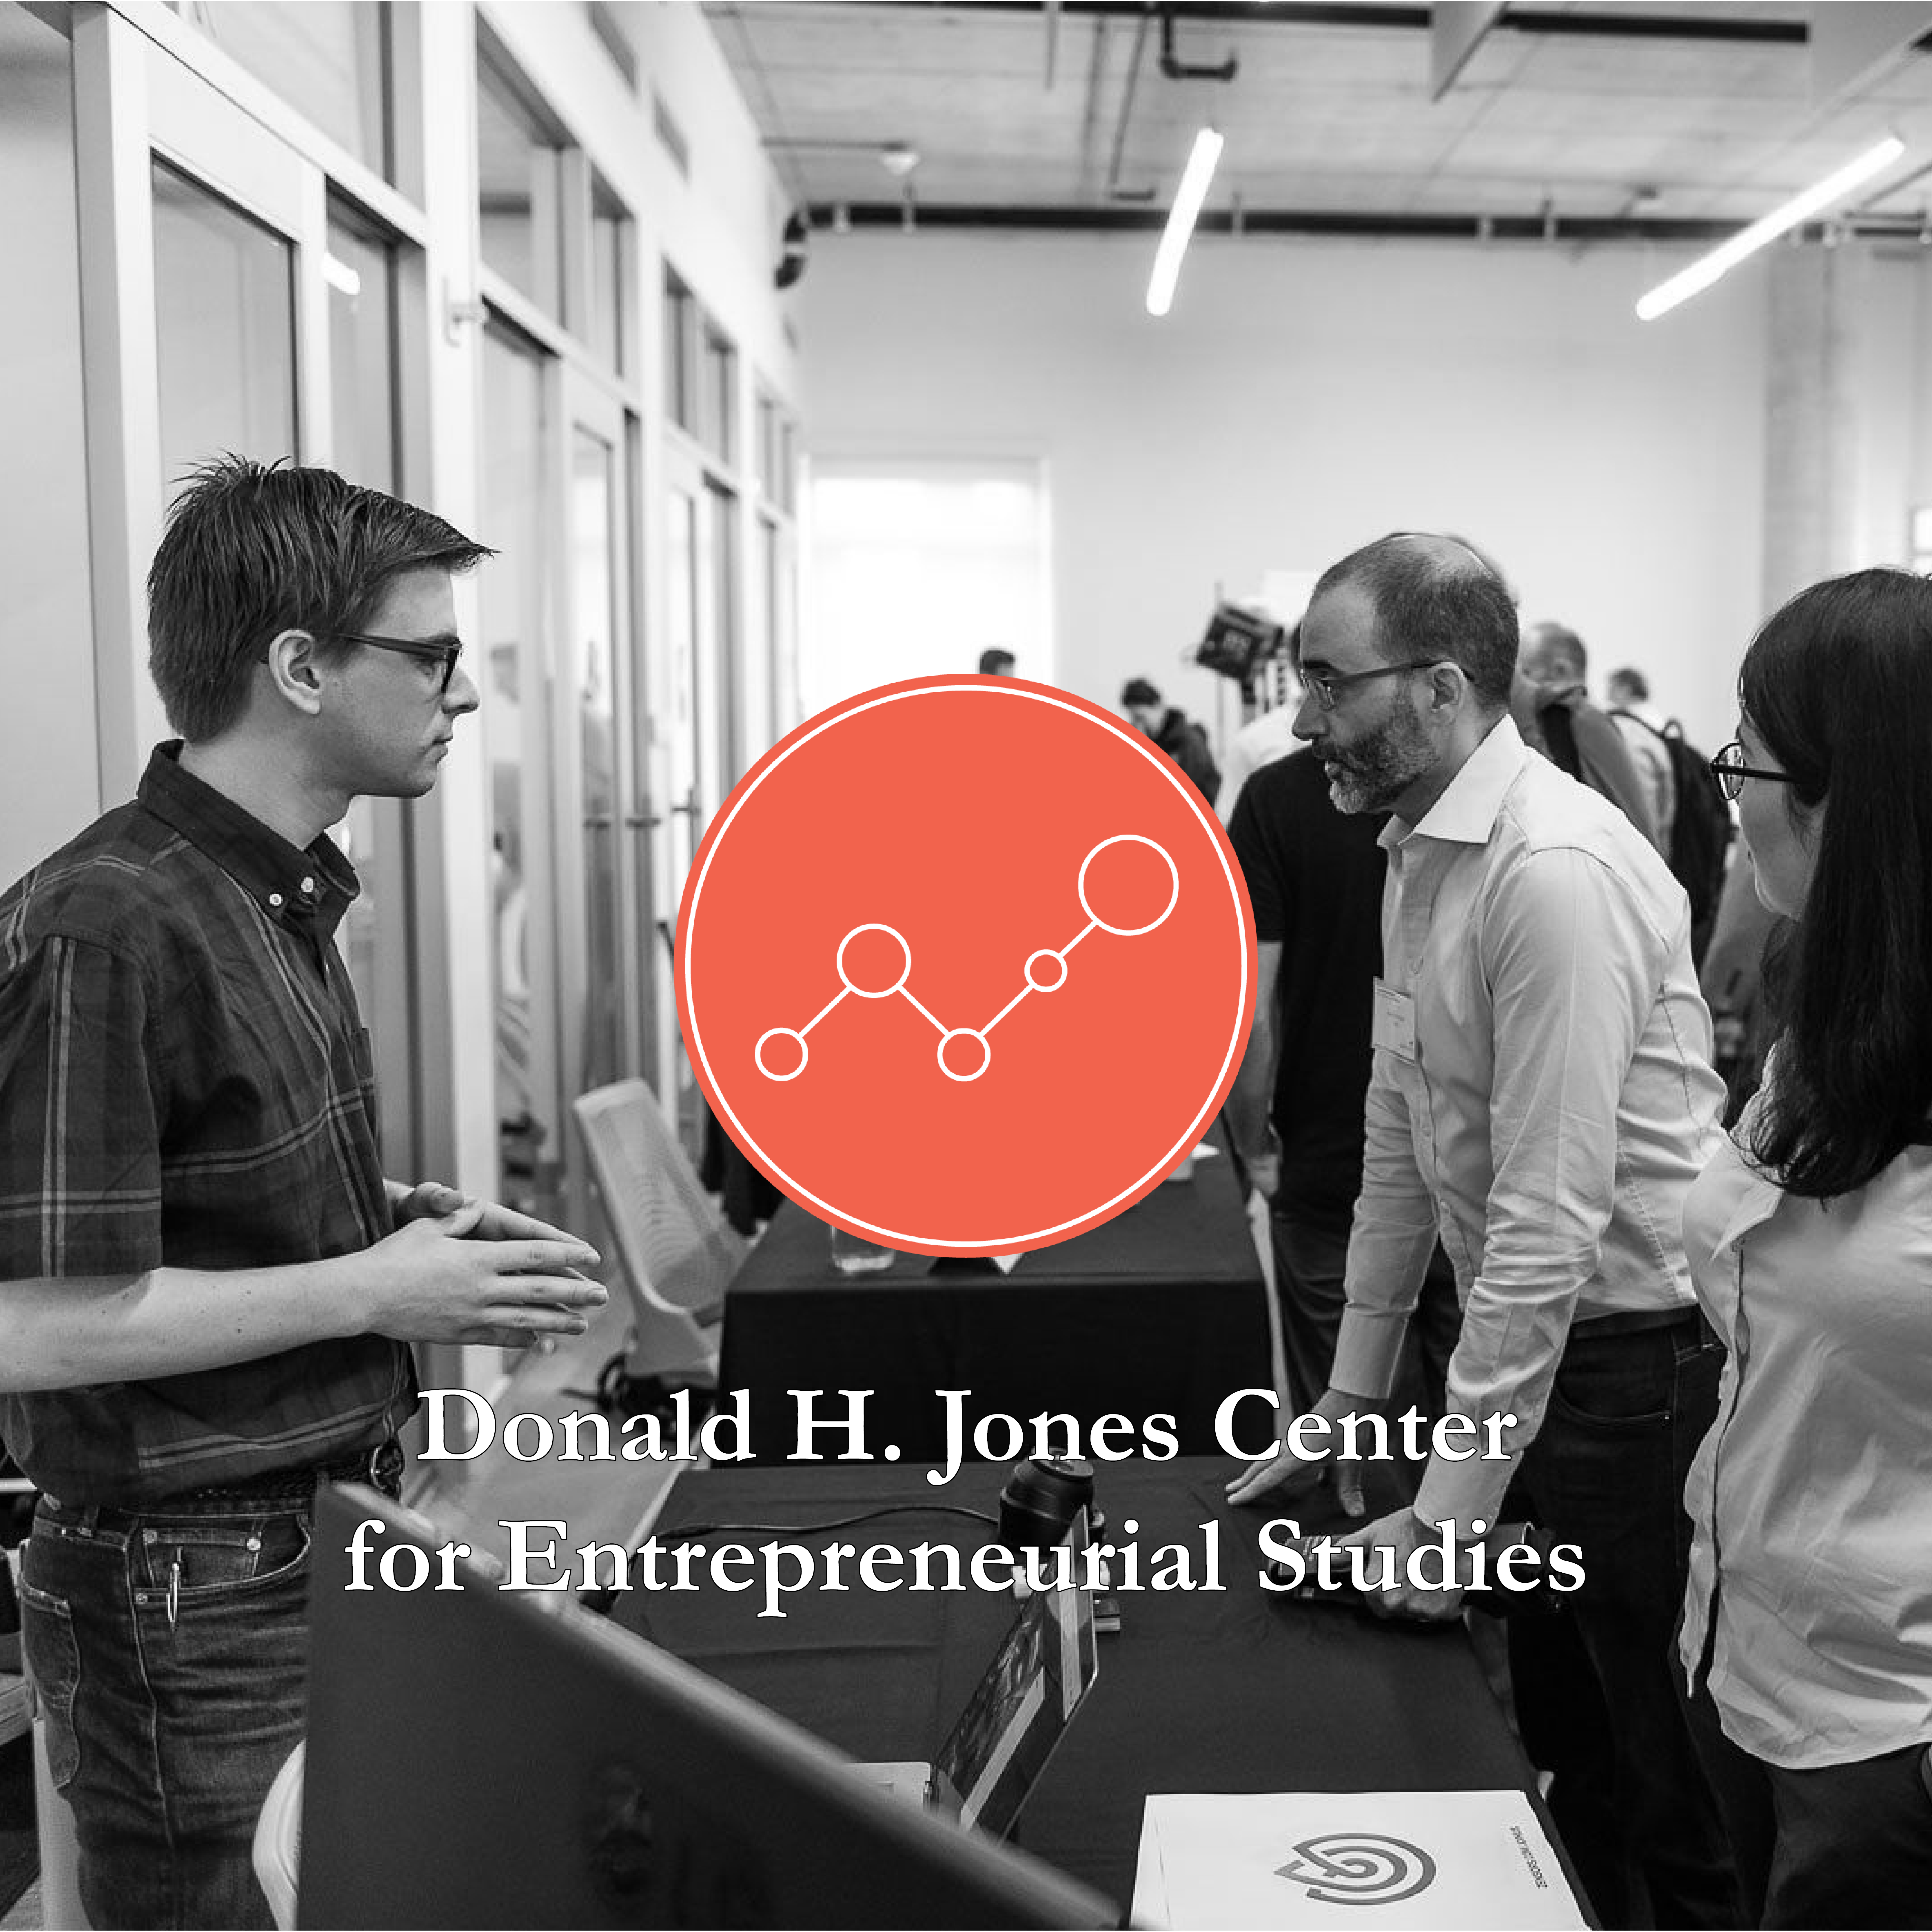 Donald H. Jones Center for Entrepreneurial Studies